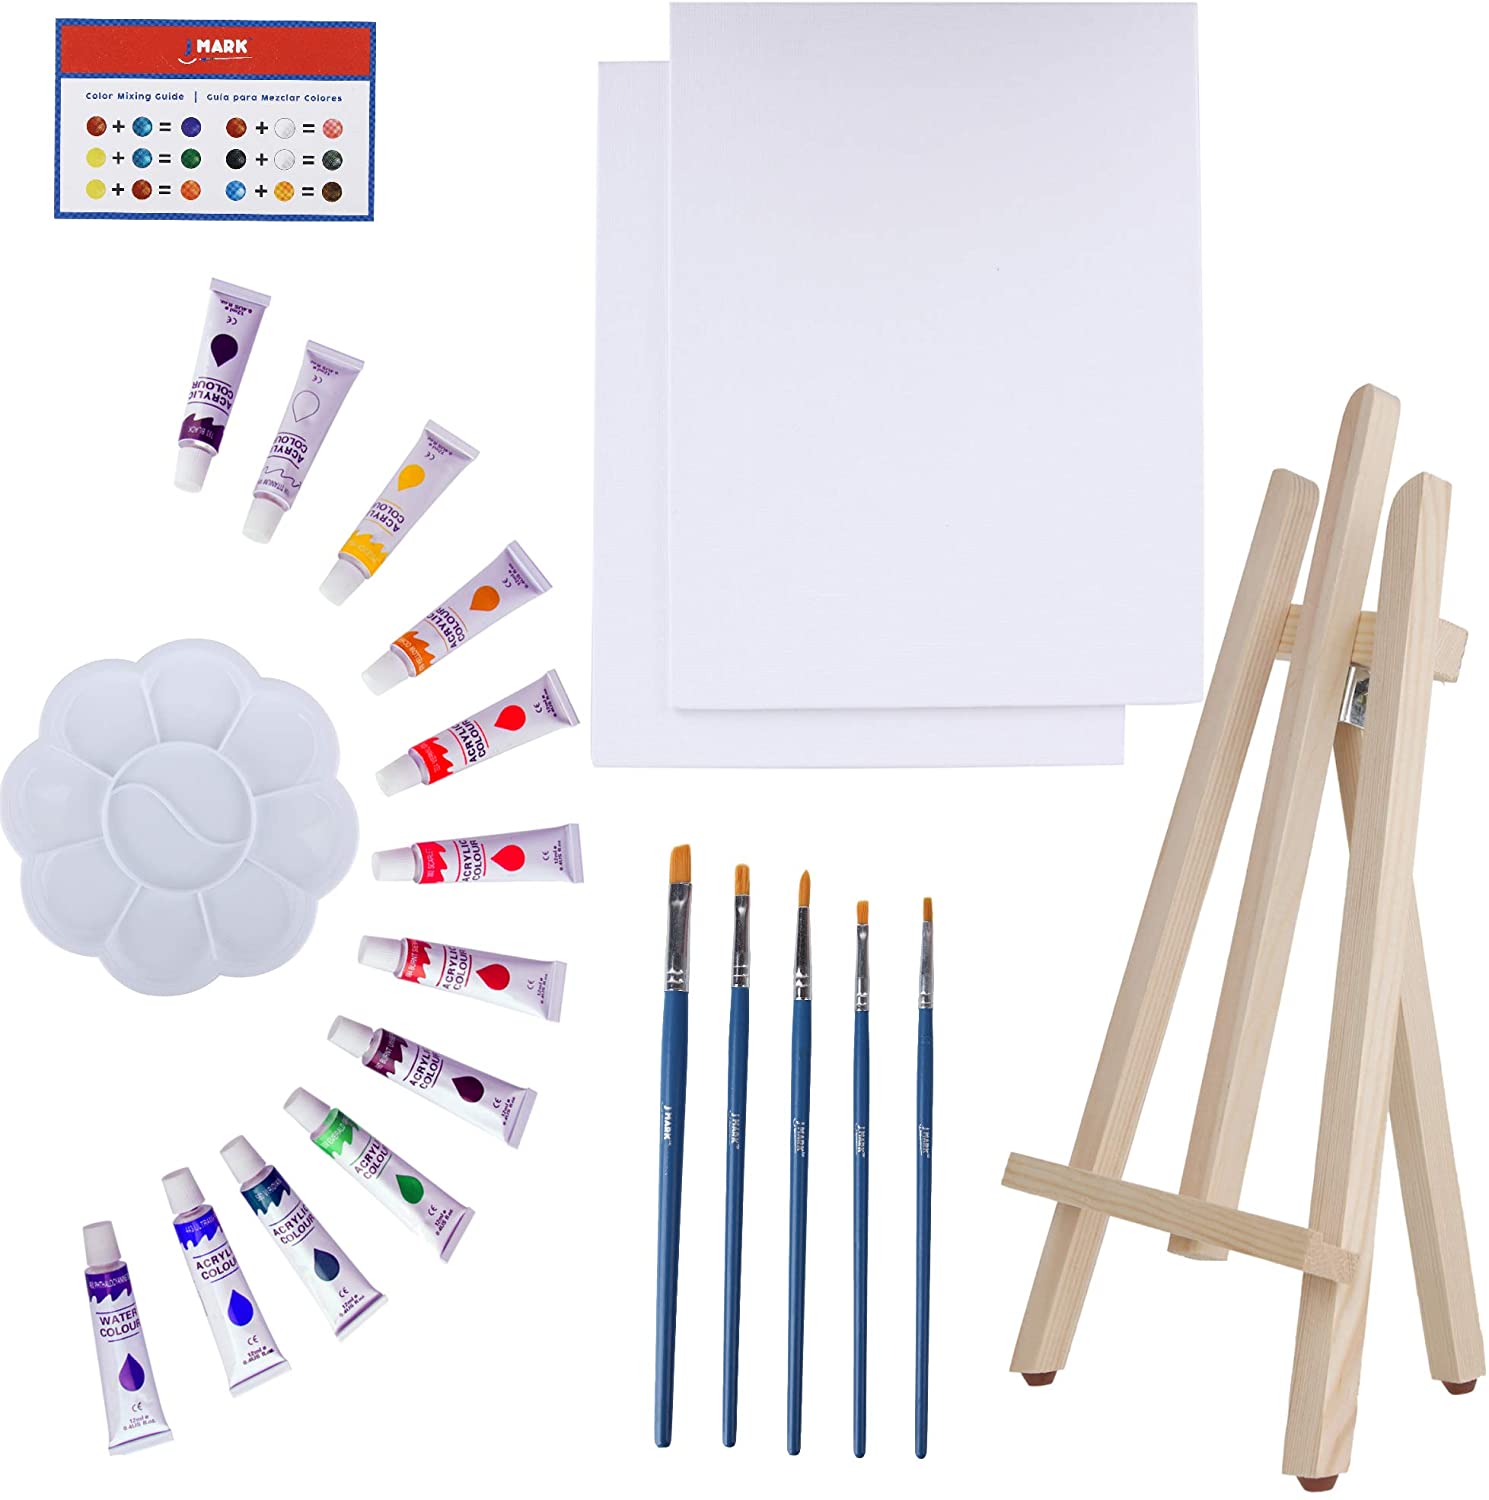  J MARK El kit de pintura incluye juego de pintura acrílica,  lienzos de 8 x 10 pulgadas, pinceles, paleta y más : Arte y Manualidades